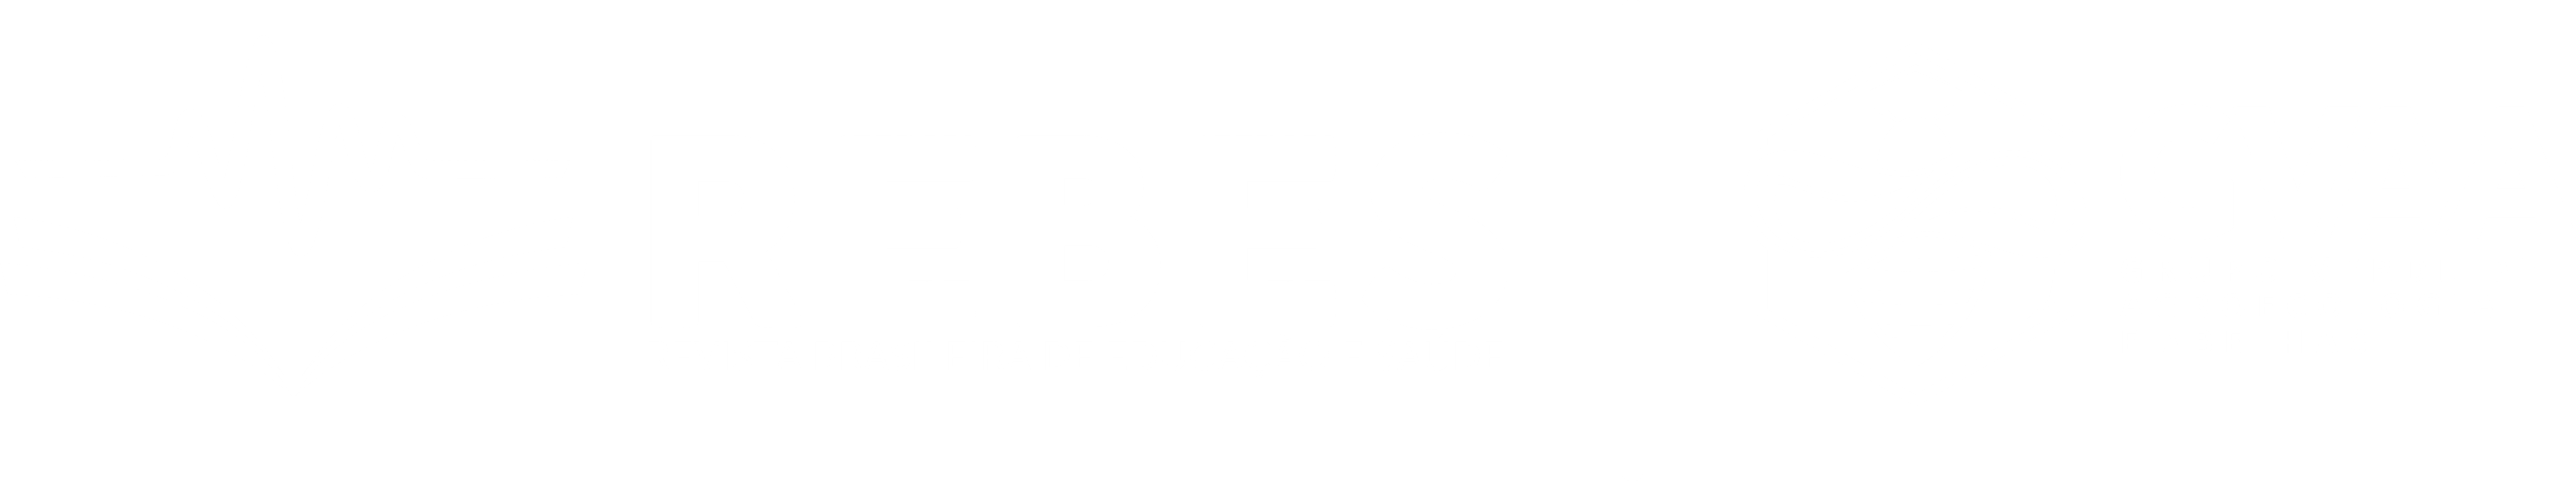 Revista Brasileira de Educação e Saúde